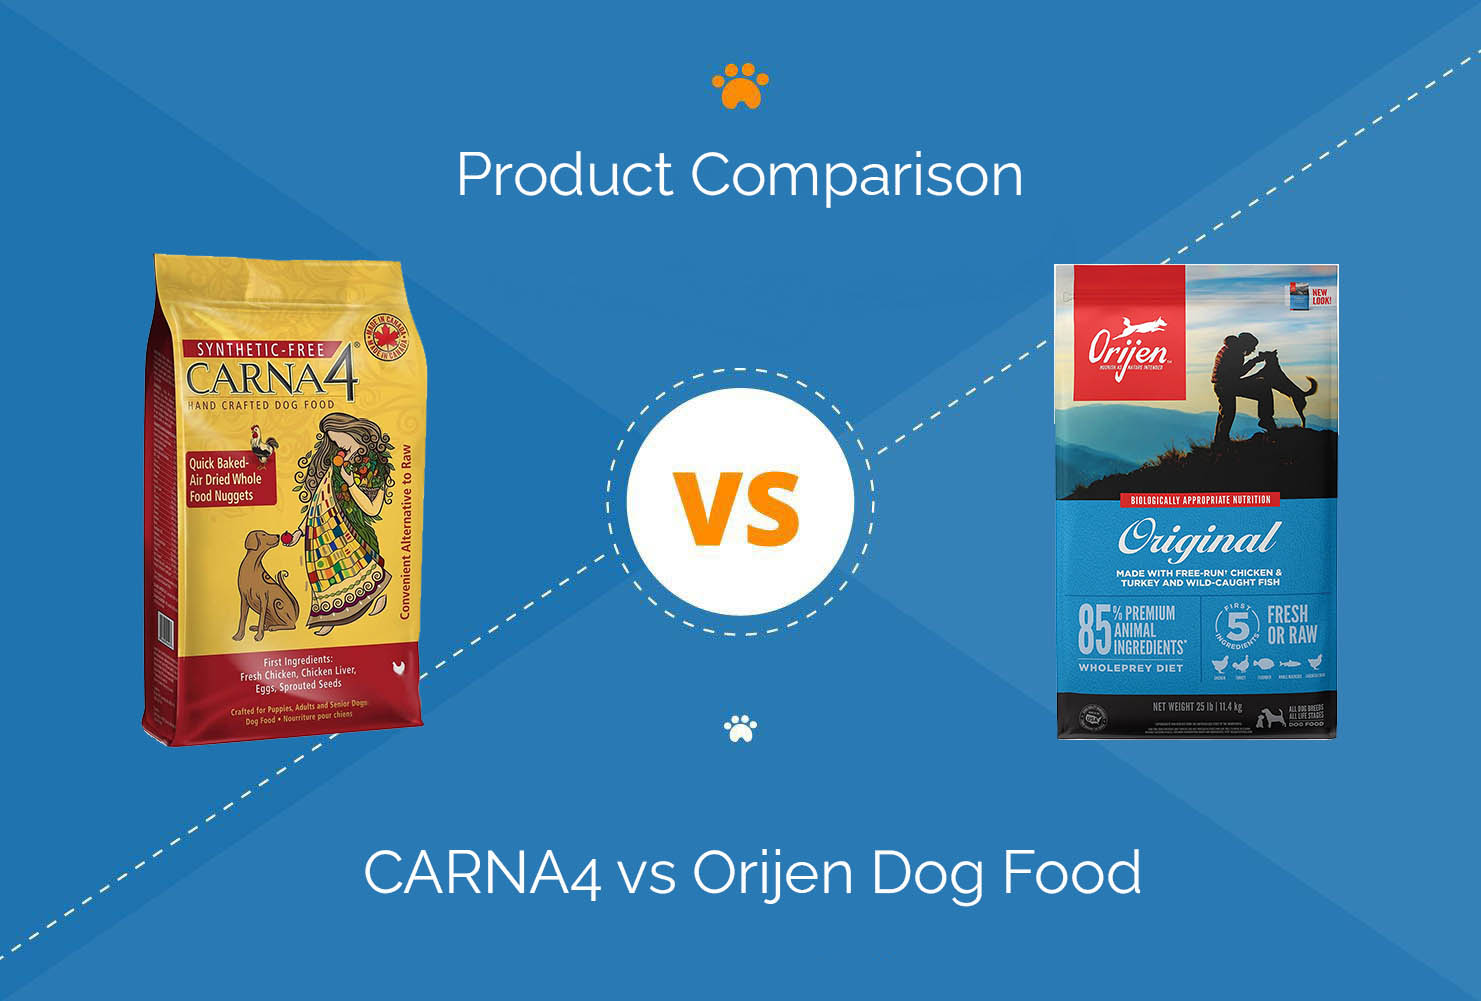 CARNA4 vs Orijen Dog Food